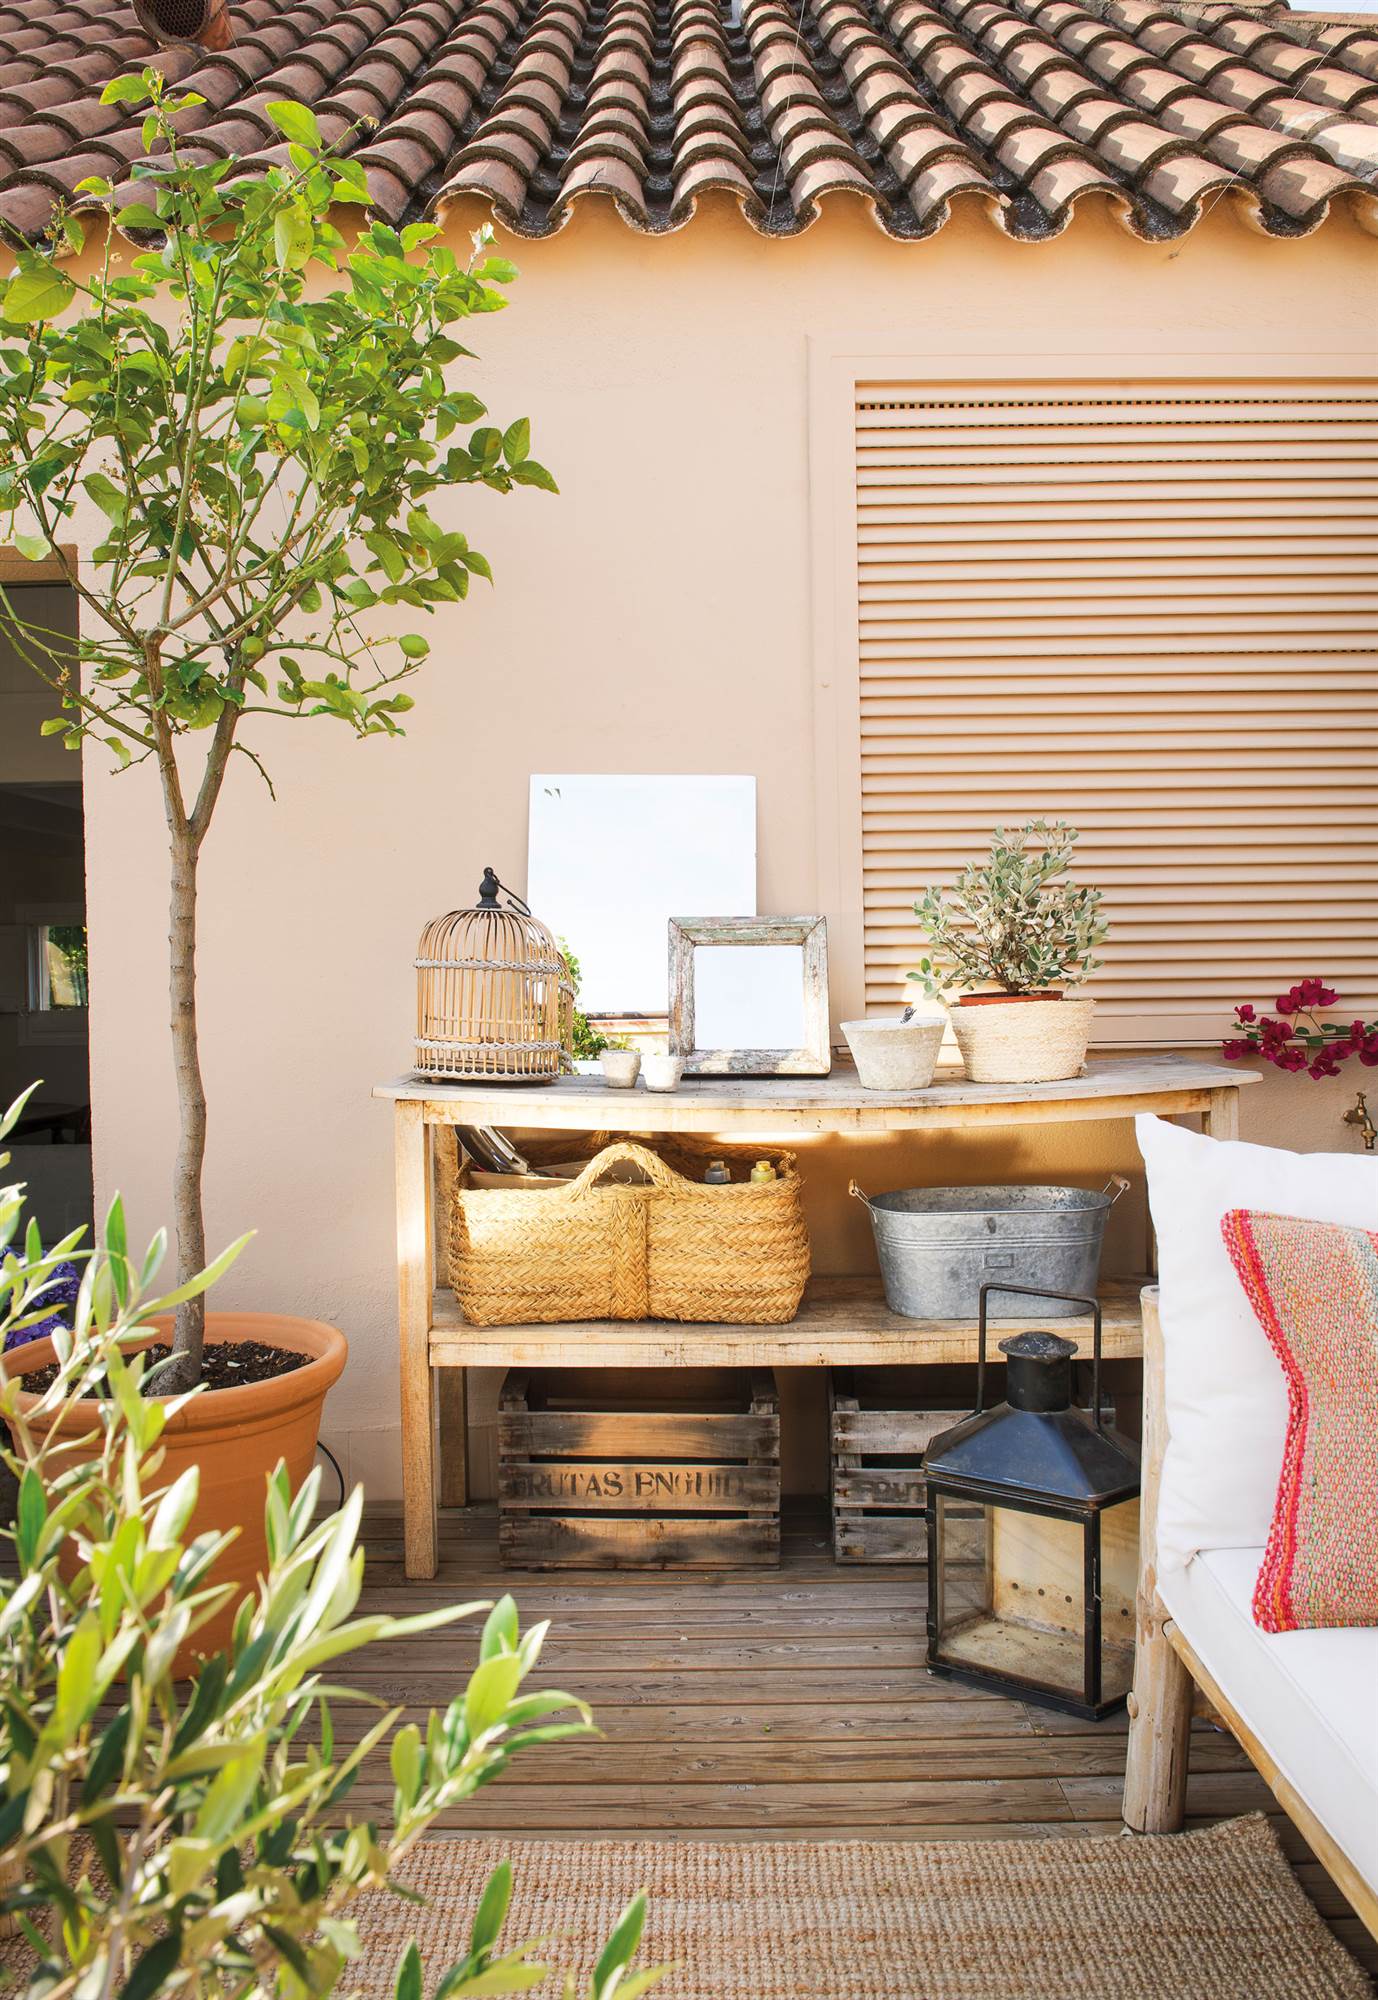 Terraza con pavimento de madera, mueble para jardinería y limonero en maceta.